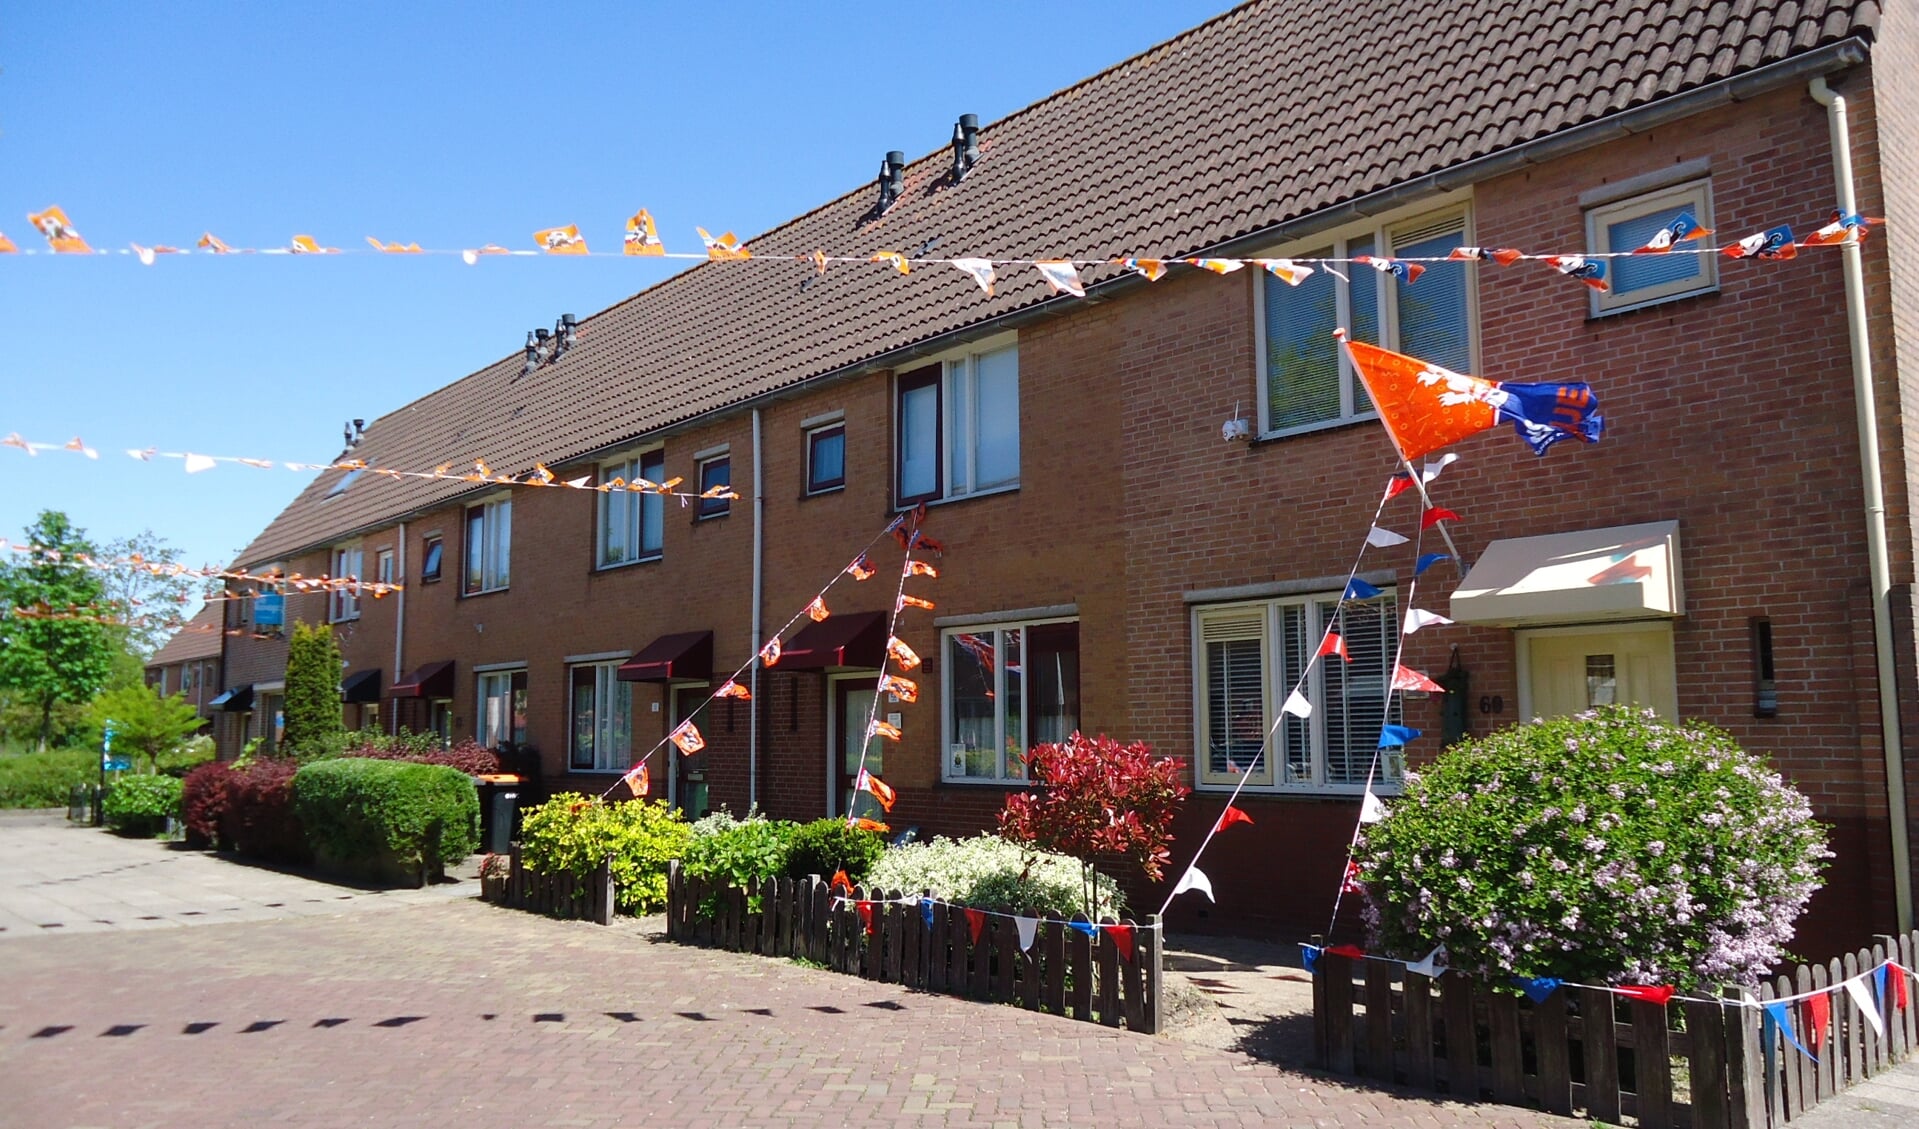 De Hillegonda Leijenstraat in Beverwijk waar ook EK-vlaggetjes van andere landen zijn opgehangen.